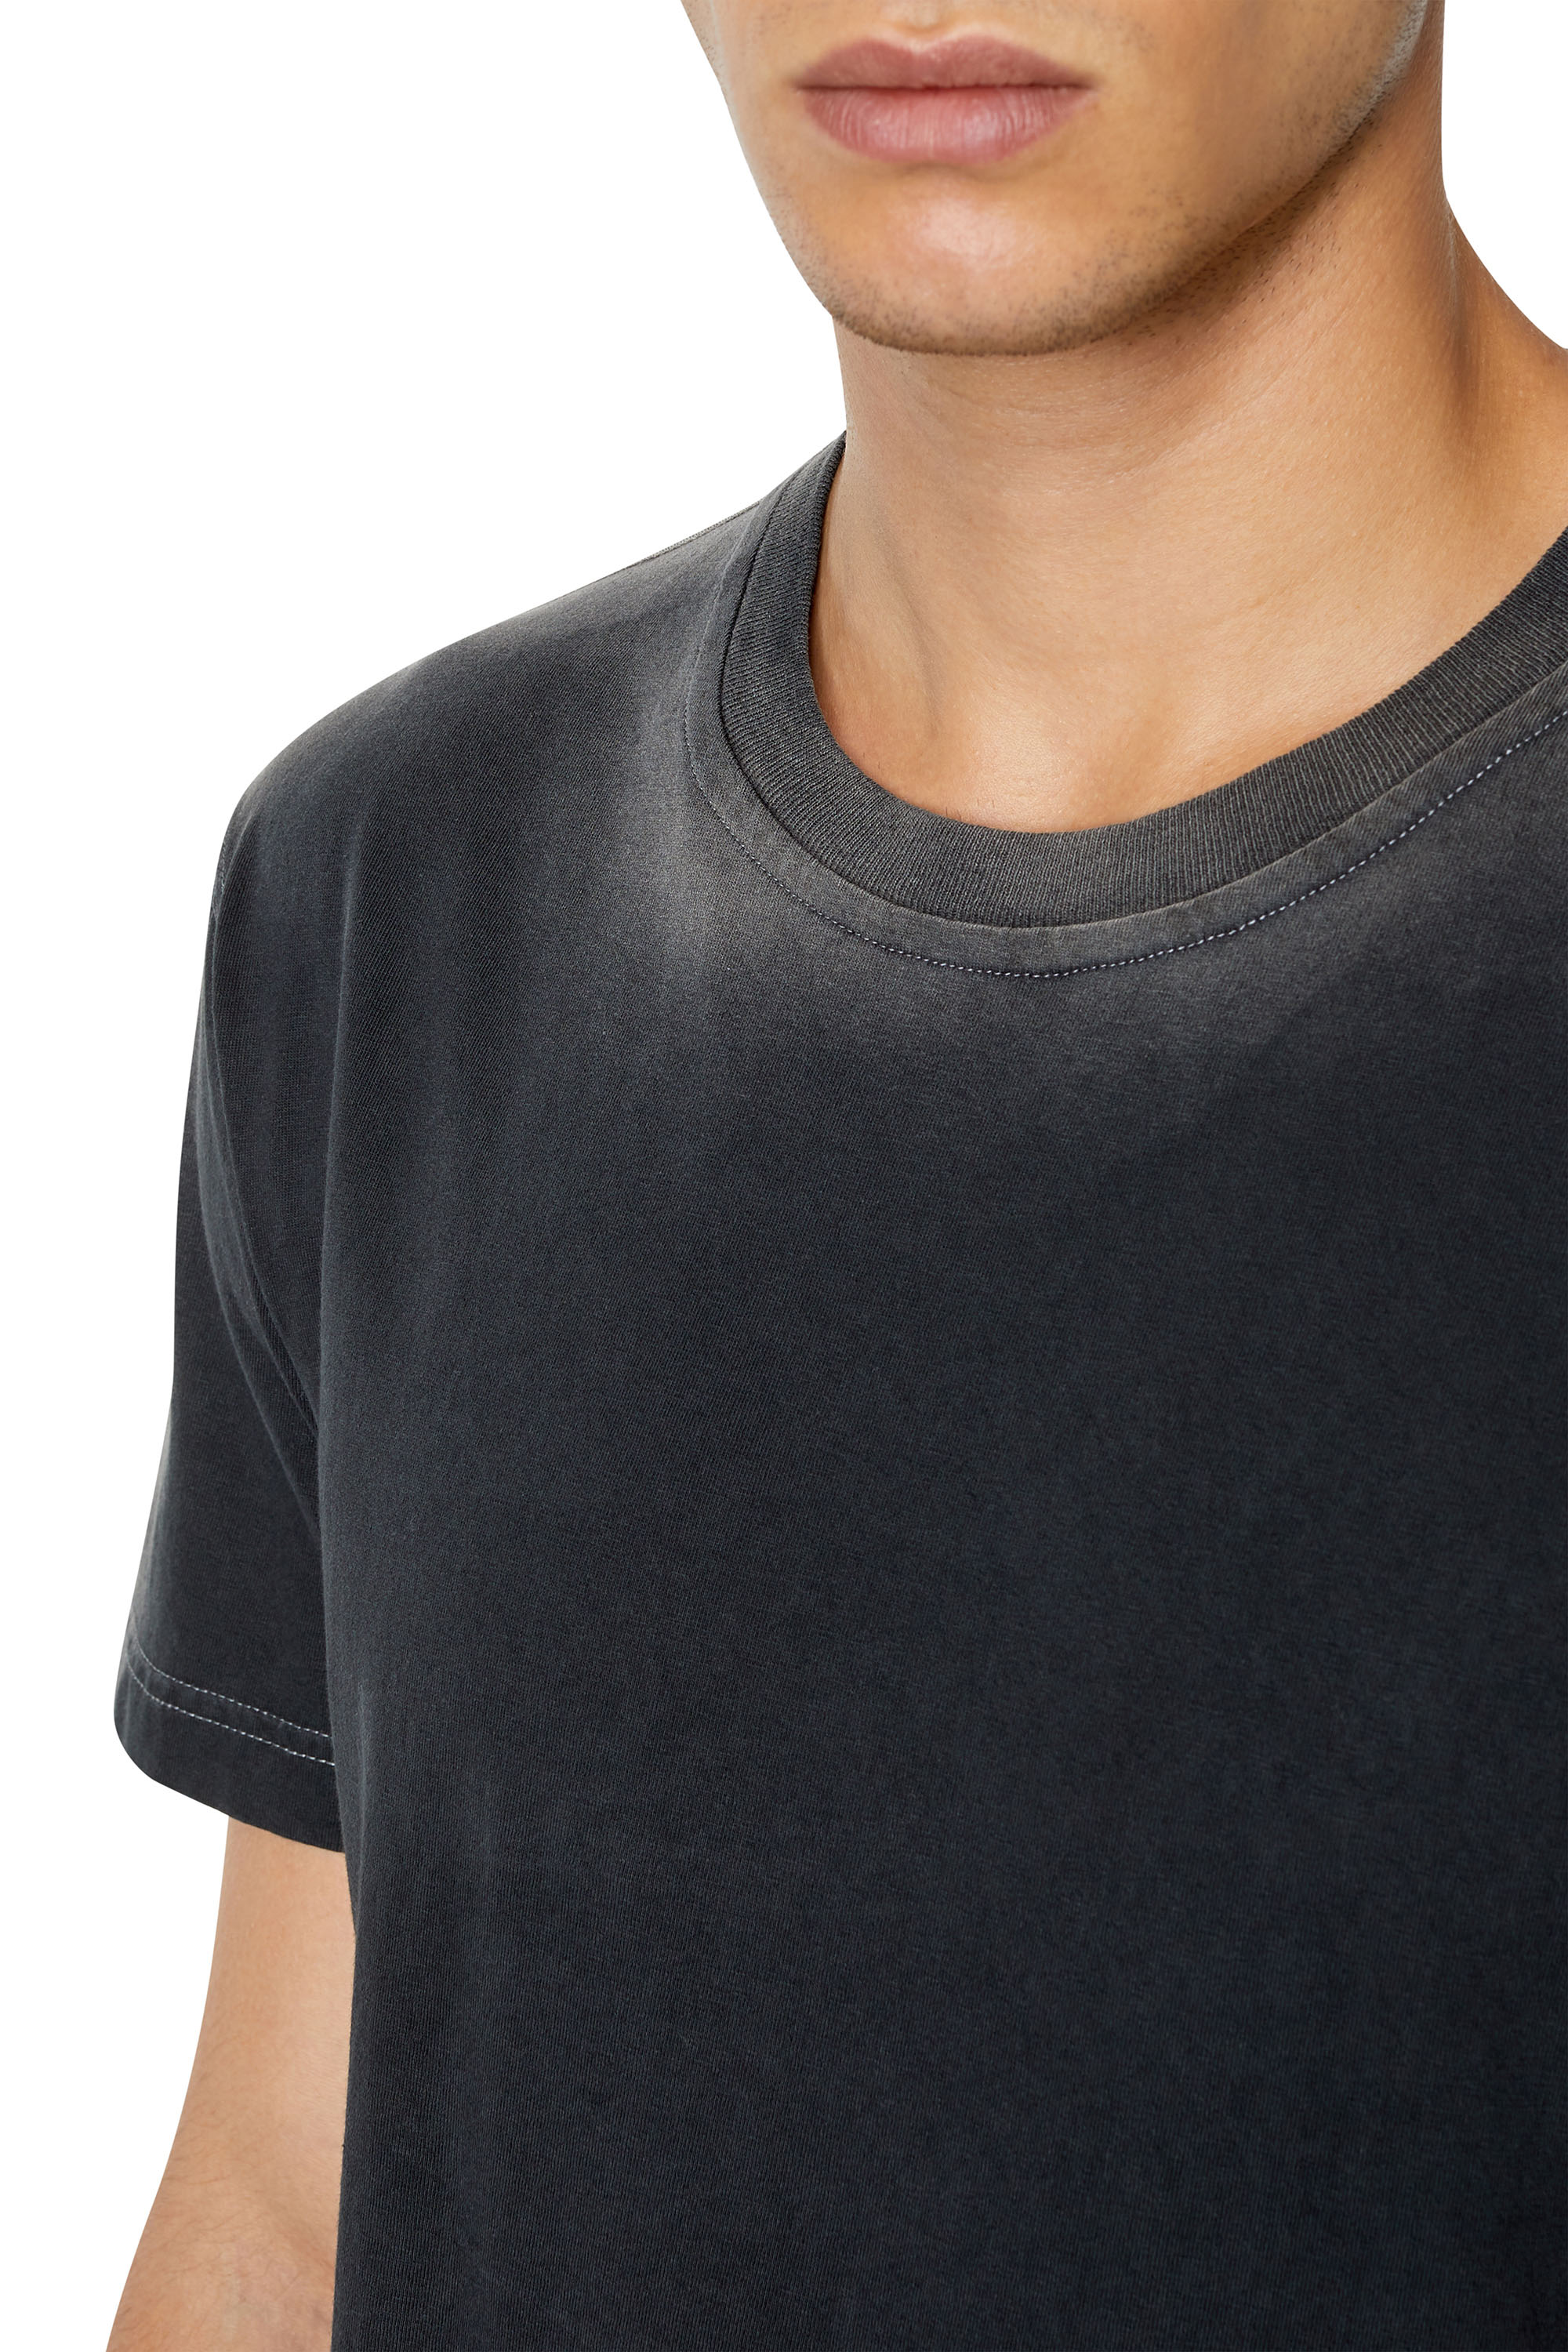 Men's T-shirts: Round Nek, V-Nek| Shop on Diesel.com